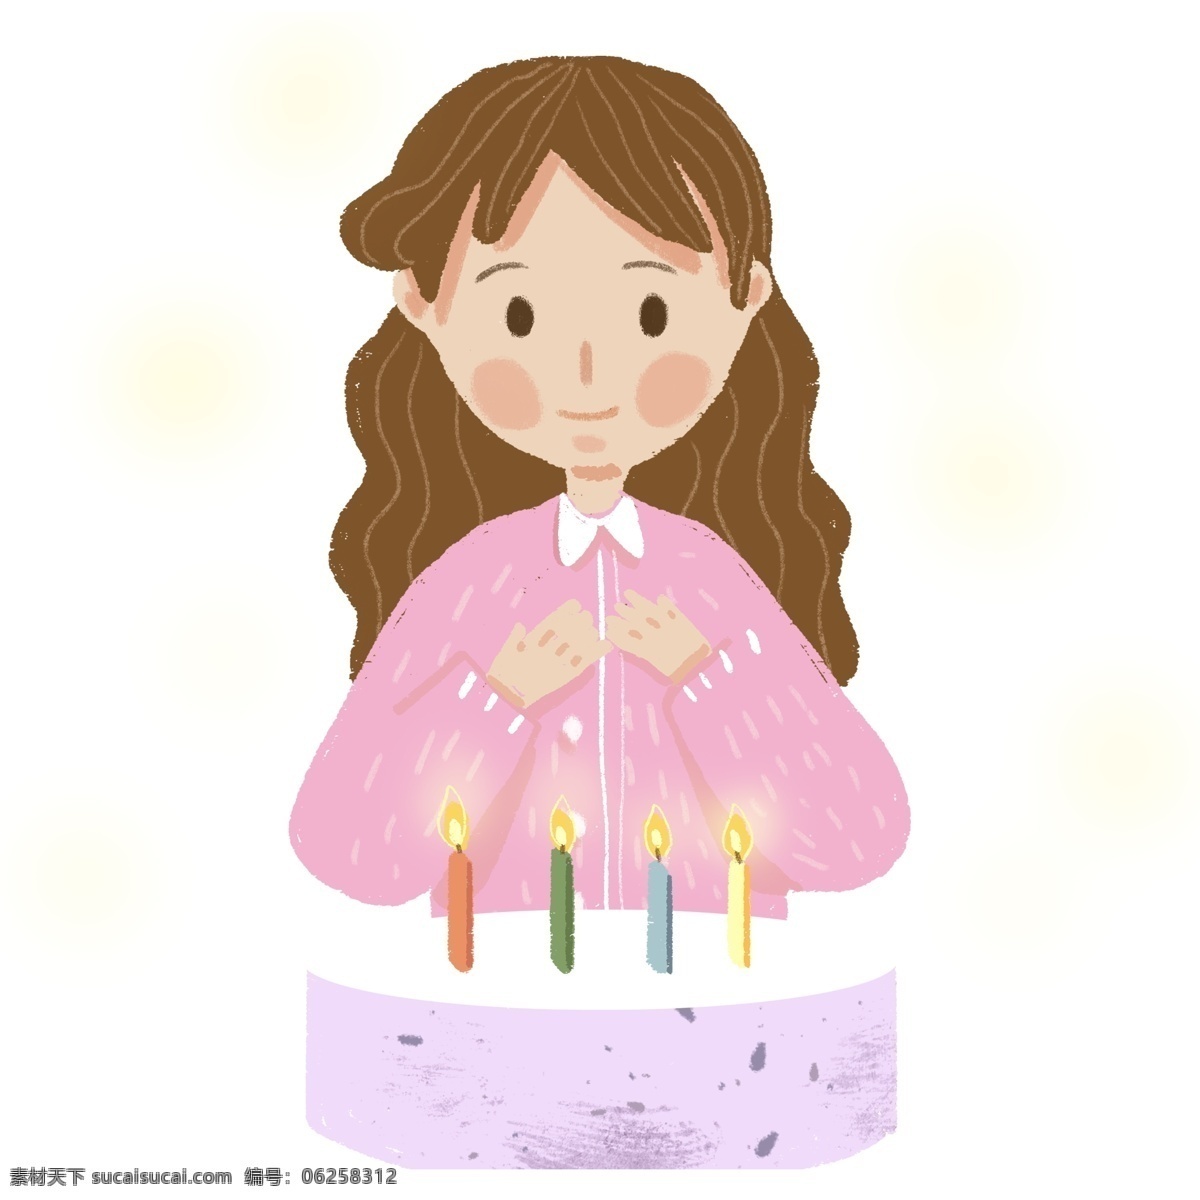 小 清新 生日 女孩 卡通 商用 元素 可爱 小女孩 小清新 生日蛋糕 过生日 许愿 插画设计